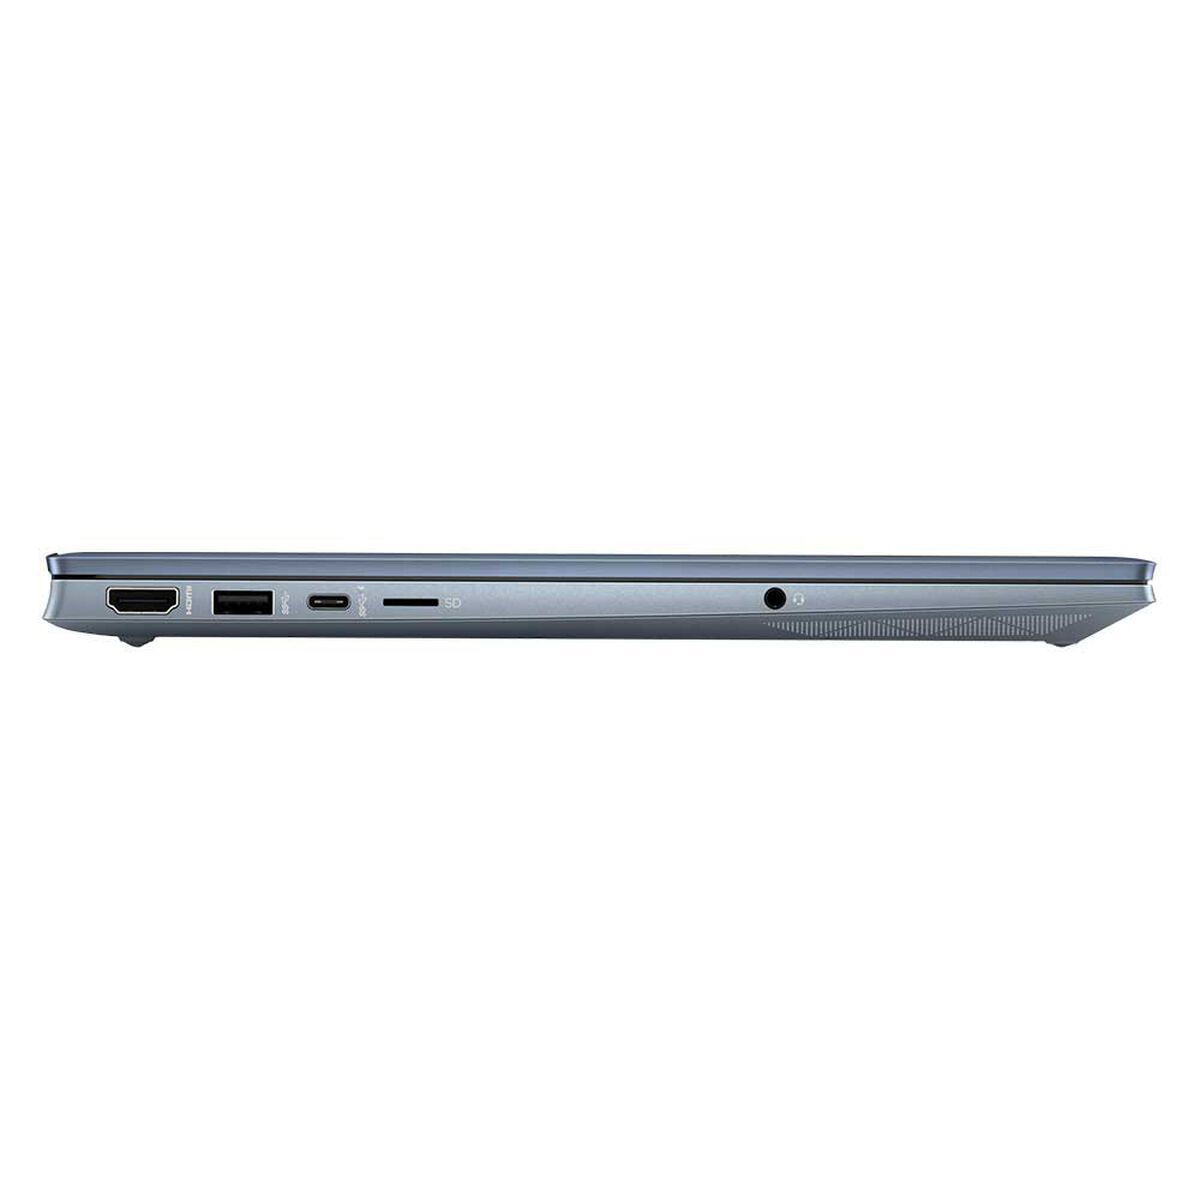 Notebook HP Pavilion 15-eh1510la Ryzen 7 16GB 512GB SSD 15,6" + Mochila Renew